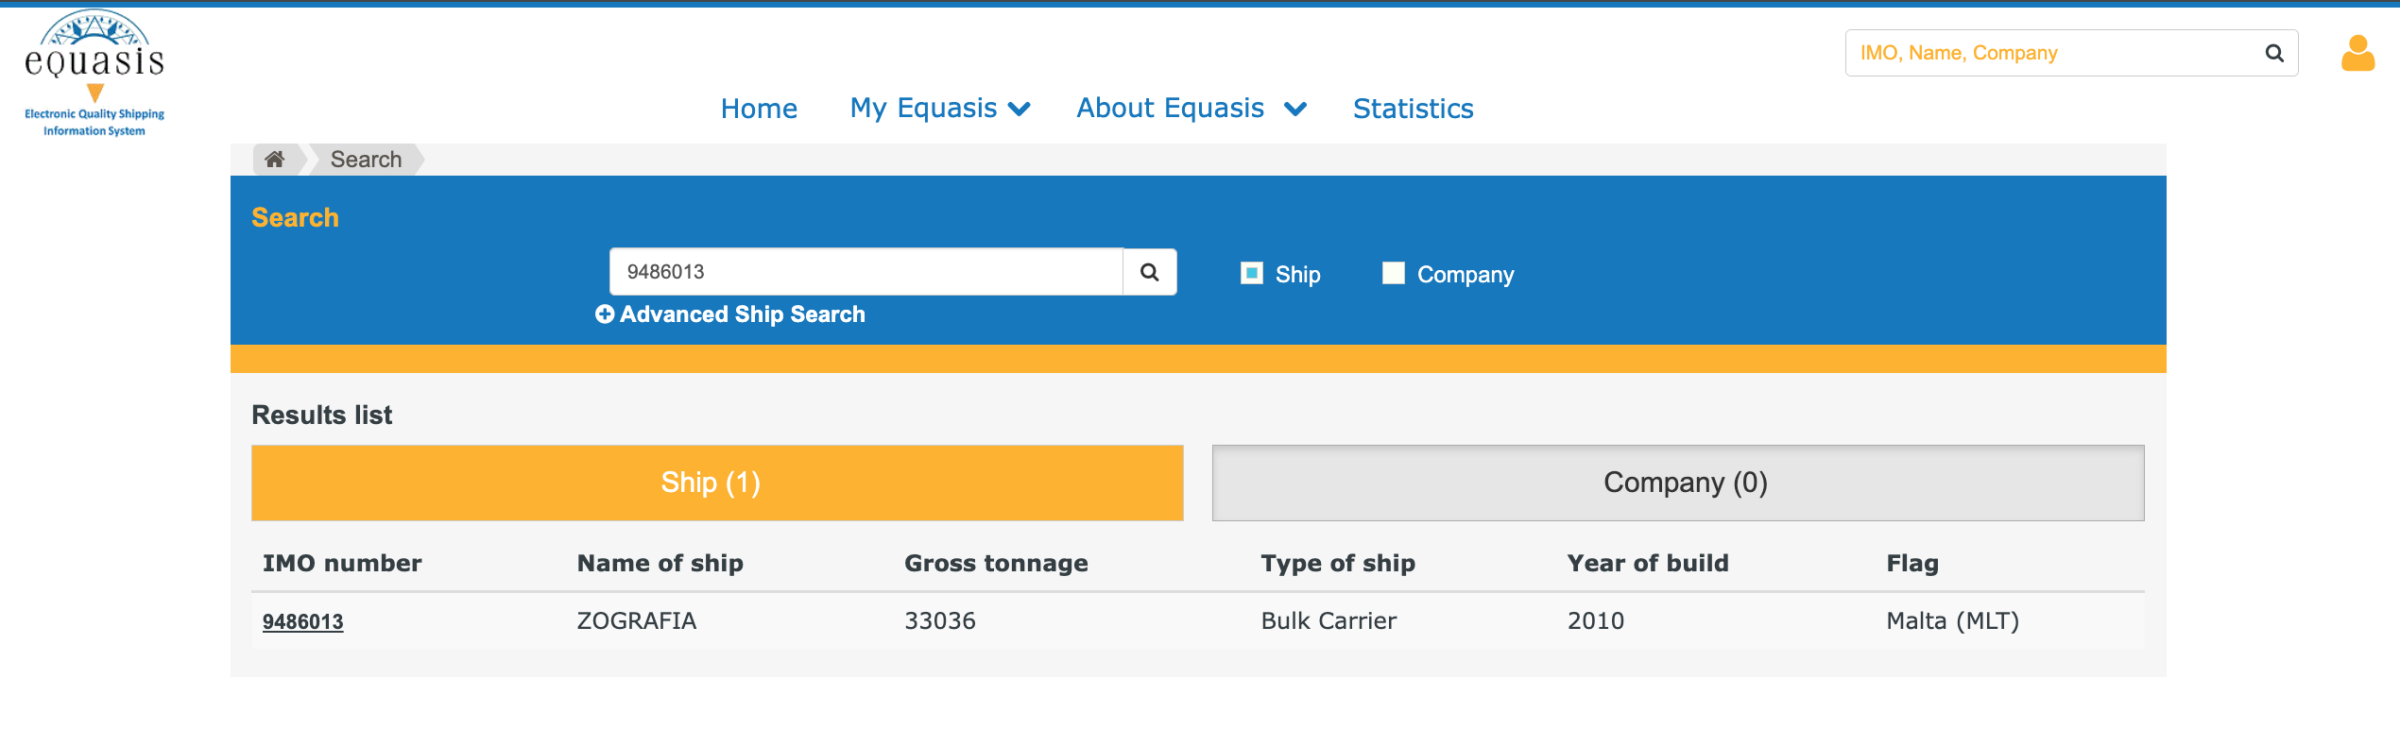 Αυτή η εικόνα είναι στιγμιότυπο οθόνης από την πλατφόρμα equasis.org. Αριστερά, φαίνεται ο αριθμός IMO και το όνομα του πλοίου Zografia, ενώ δεξιά ο τύπος του πλοίου, το έτος κατασκευής του και η σημαία υπό την οποία πλέει.